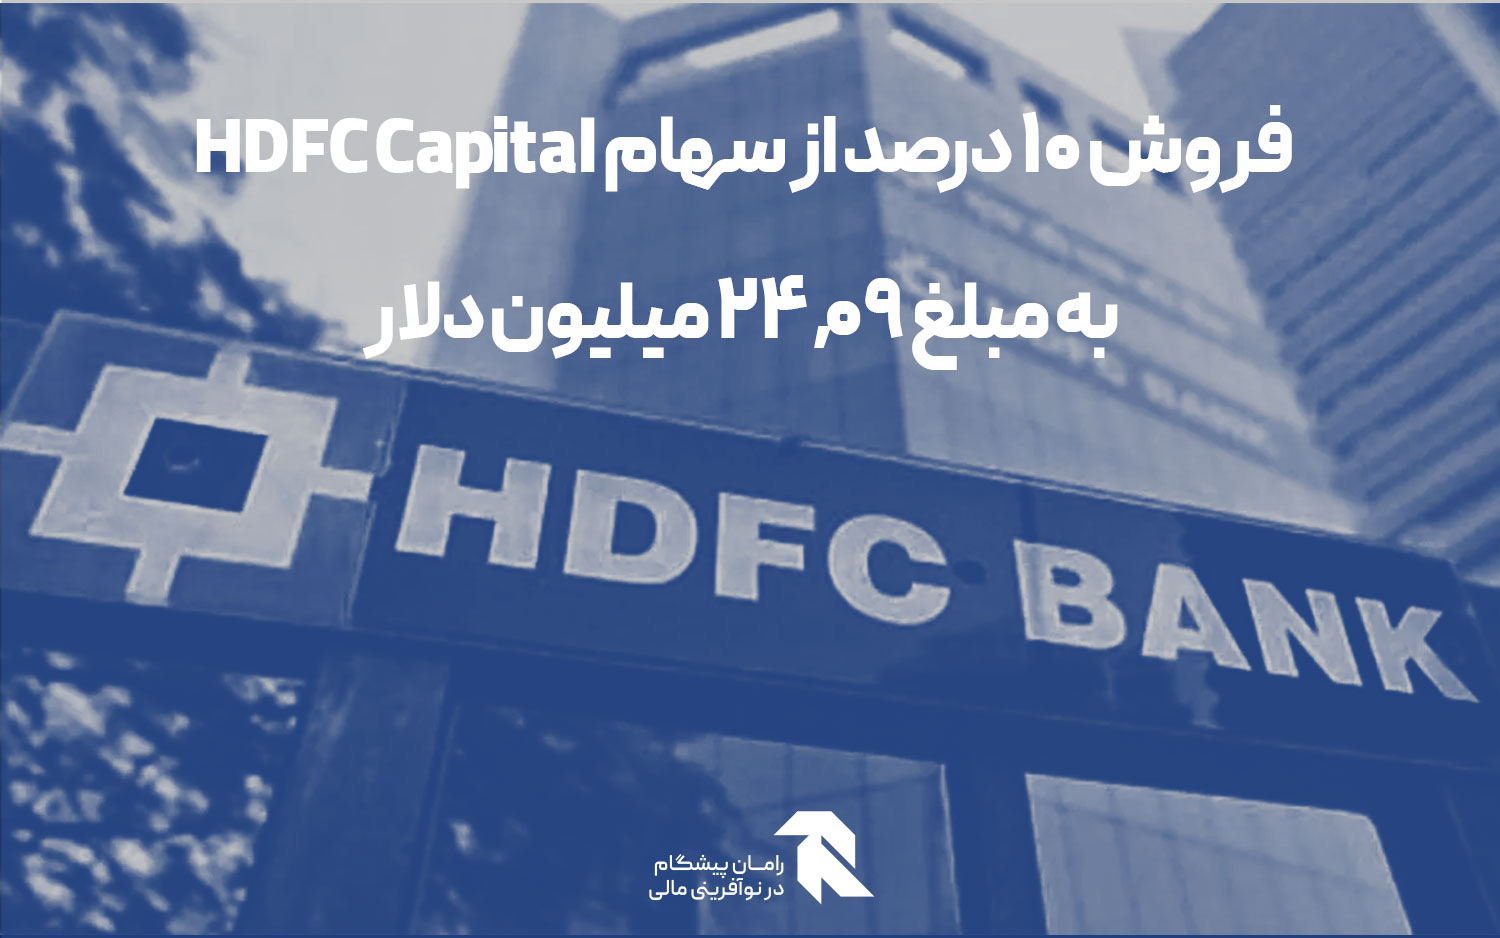 فروش 10 درصد از سهام HDFC Capital به مبلغ ۲۴.۰۹ میلیون دلار